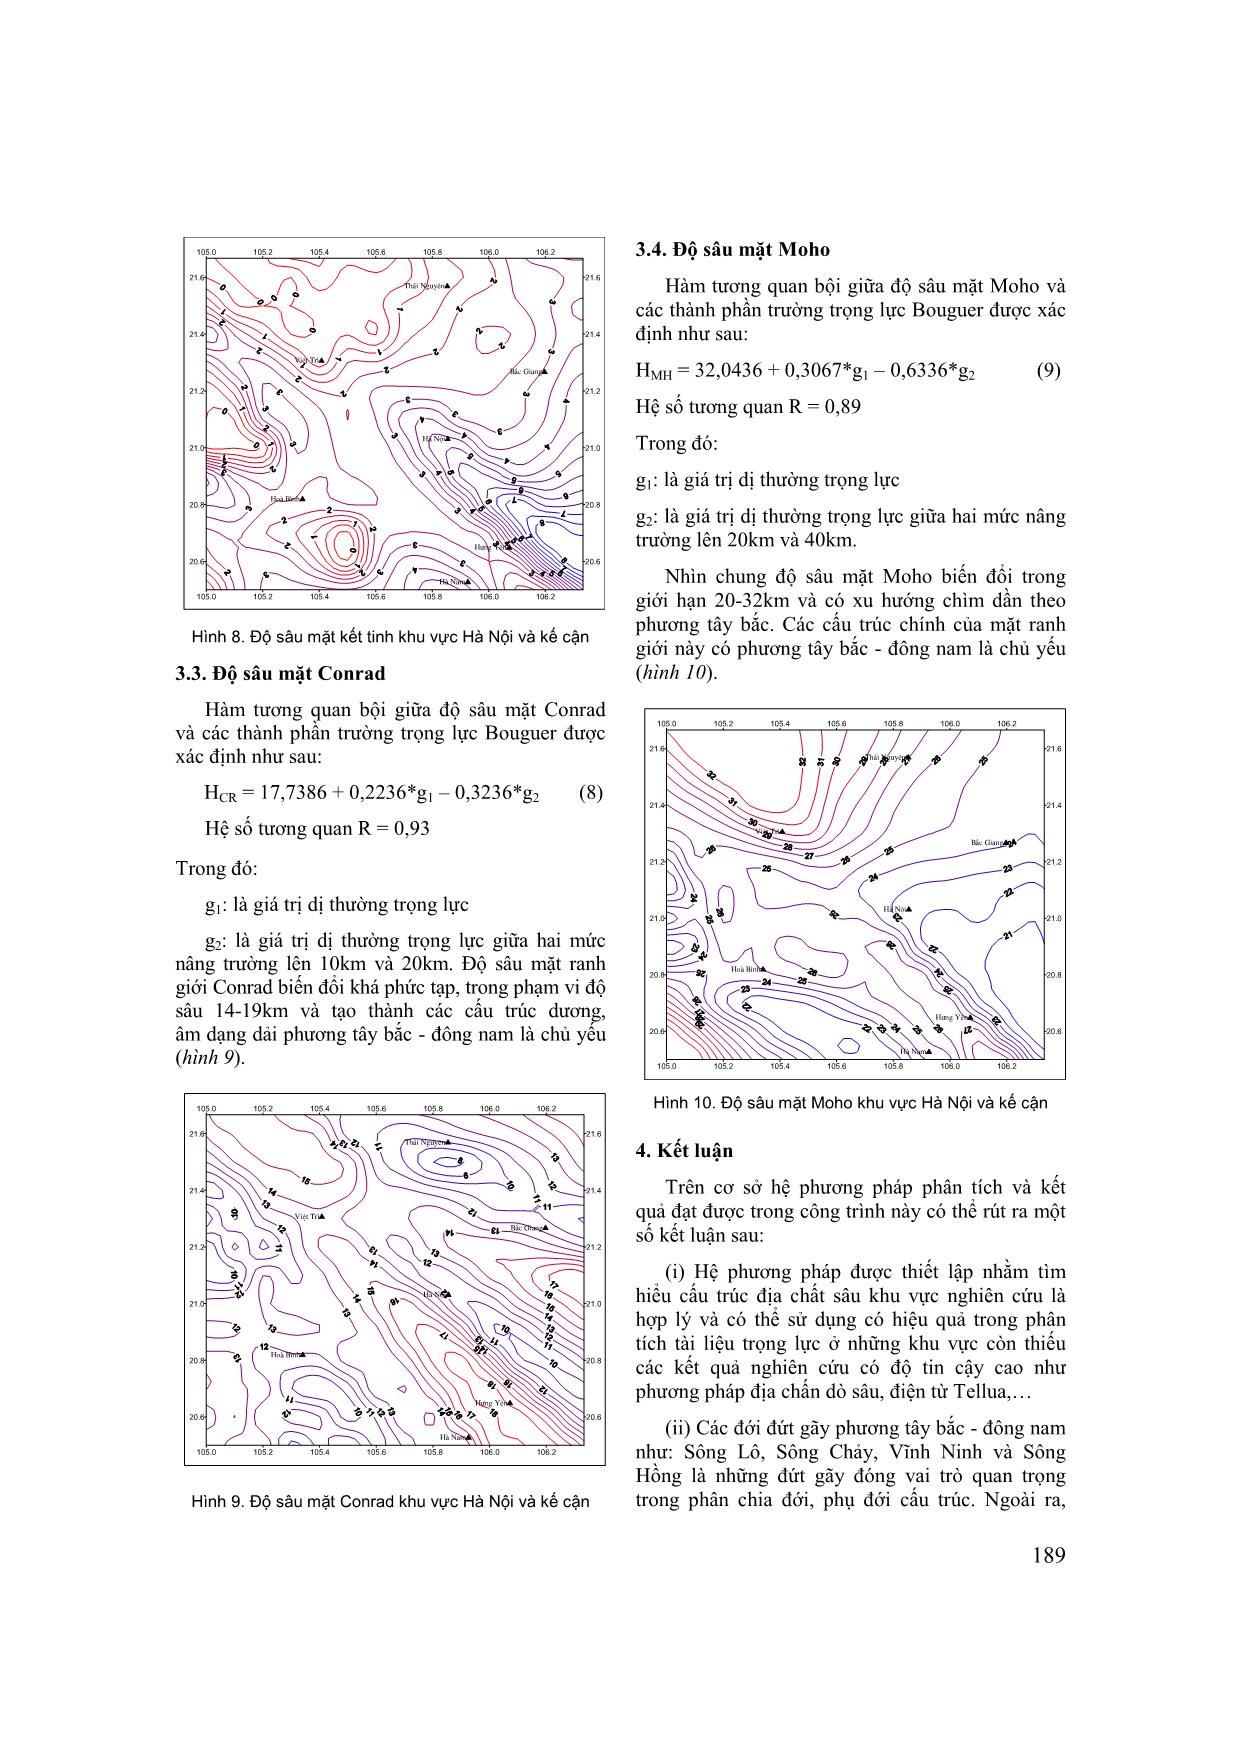 Cấu trúc địa chất sâu khu vực Hà Nội và lân cận trên cơ sở phân tích tài liệu trọng lực trang 5